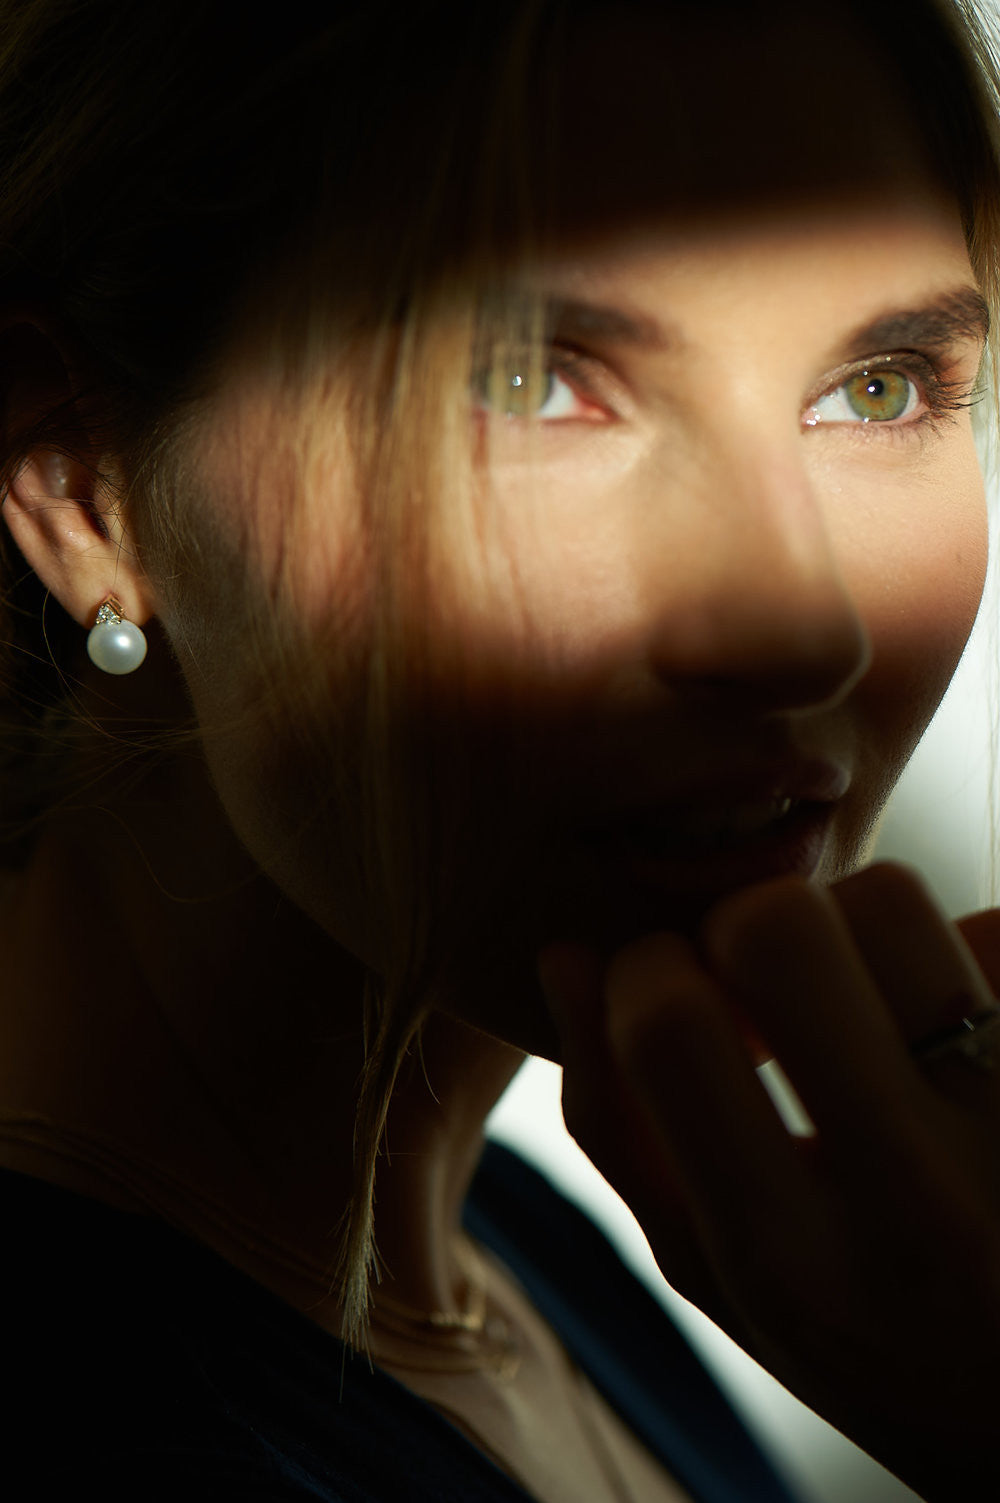 Selin Kent 14K Ada Pearl Earrings with Trillion White Diamonds - On Model